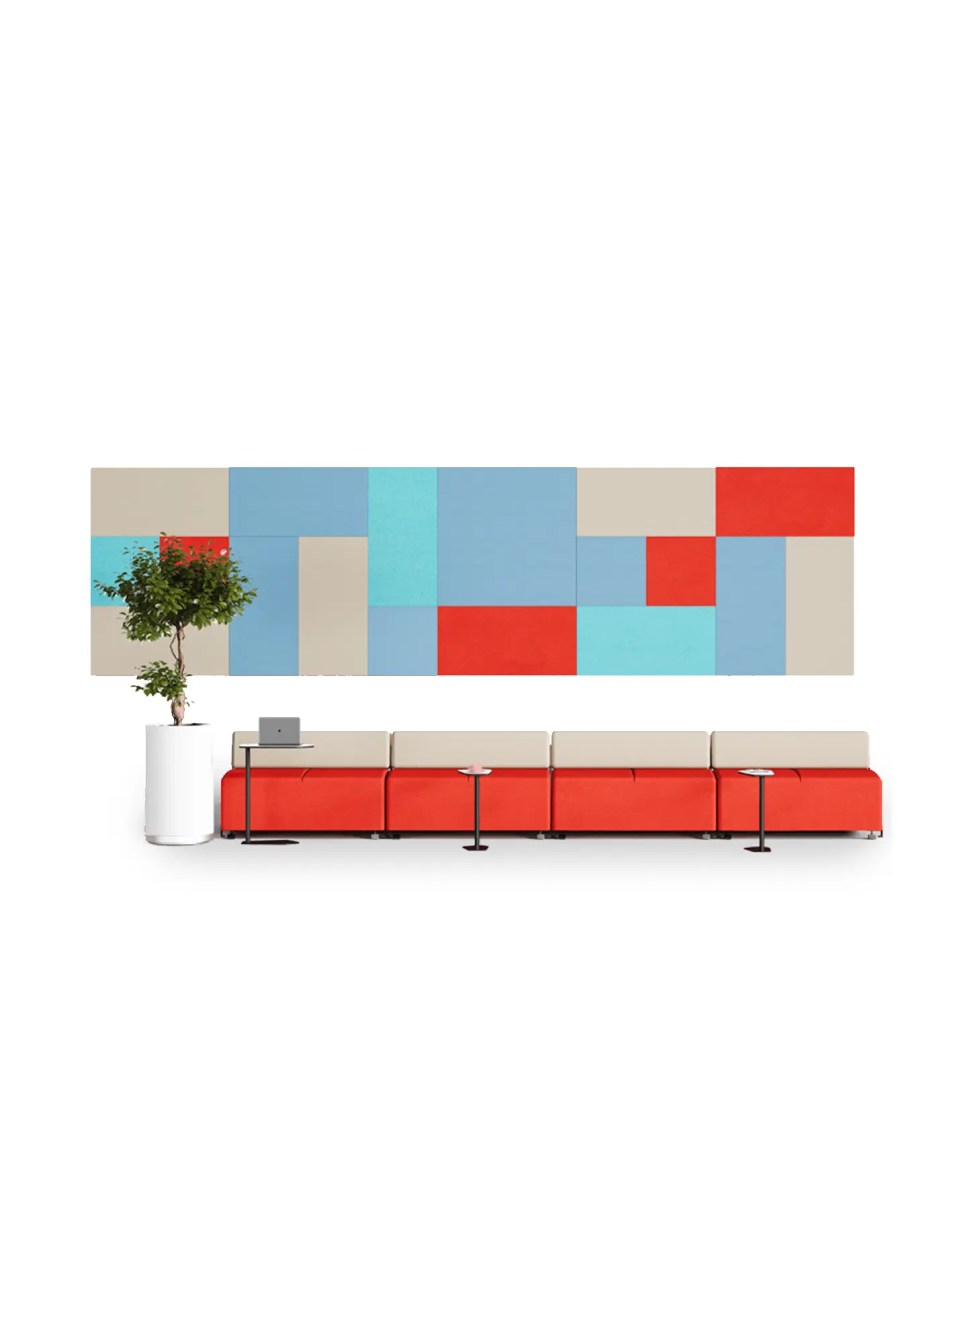 panneaux acoustiques muraux décoratifs bleu beige rouge carrés et rectangle en mosaique